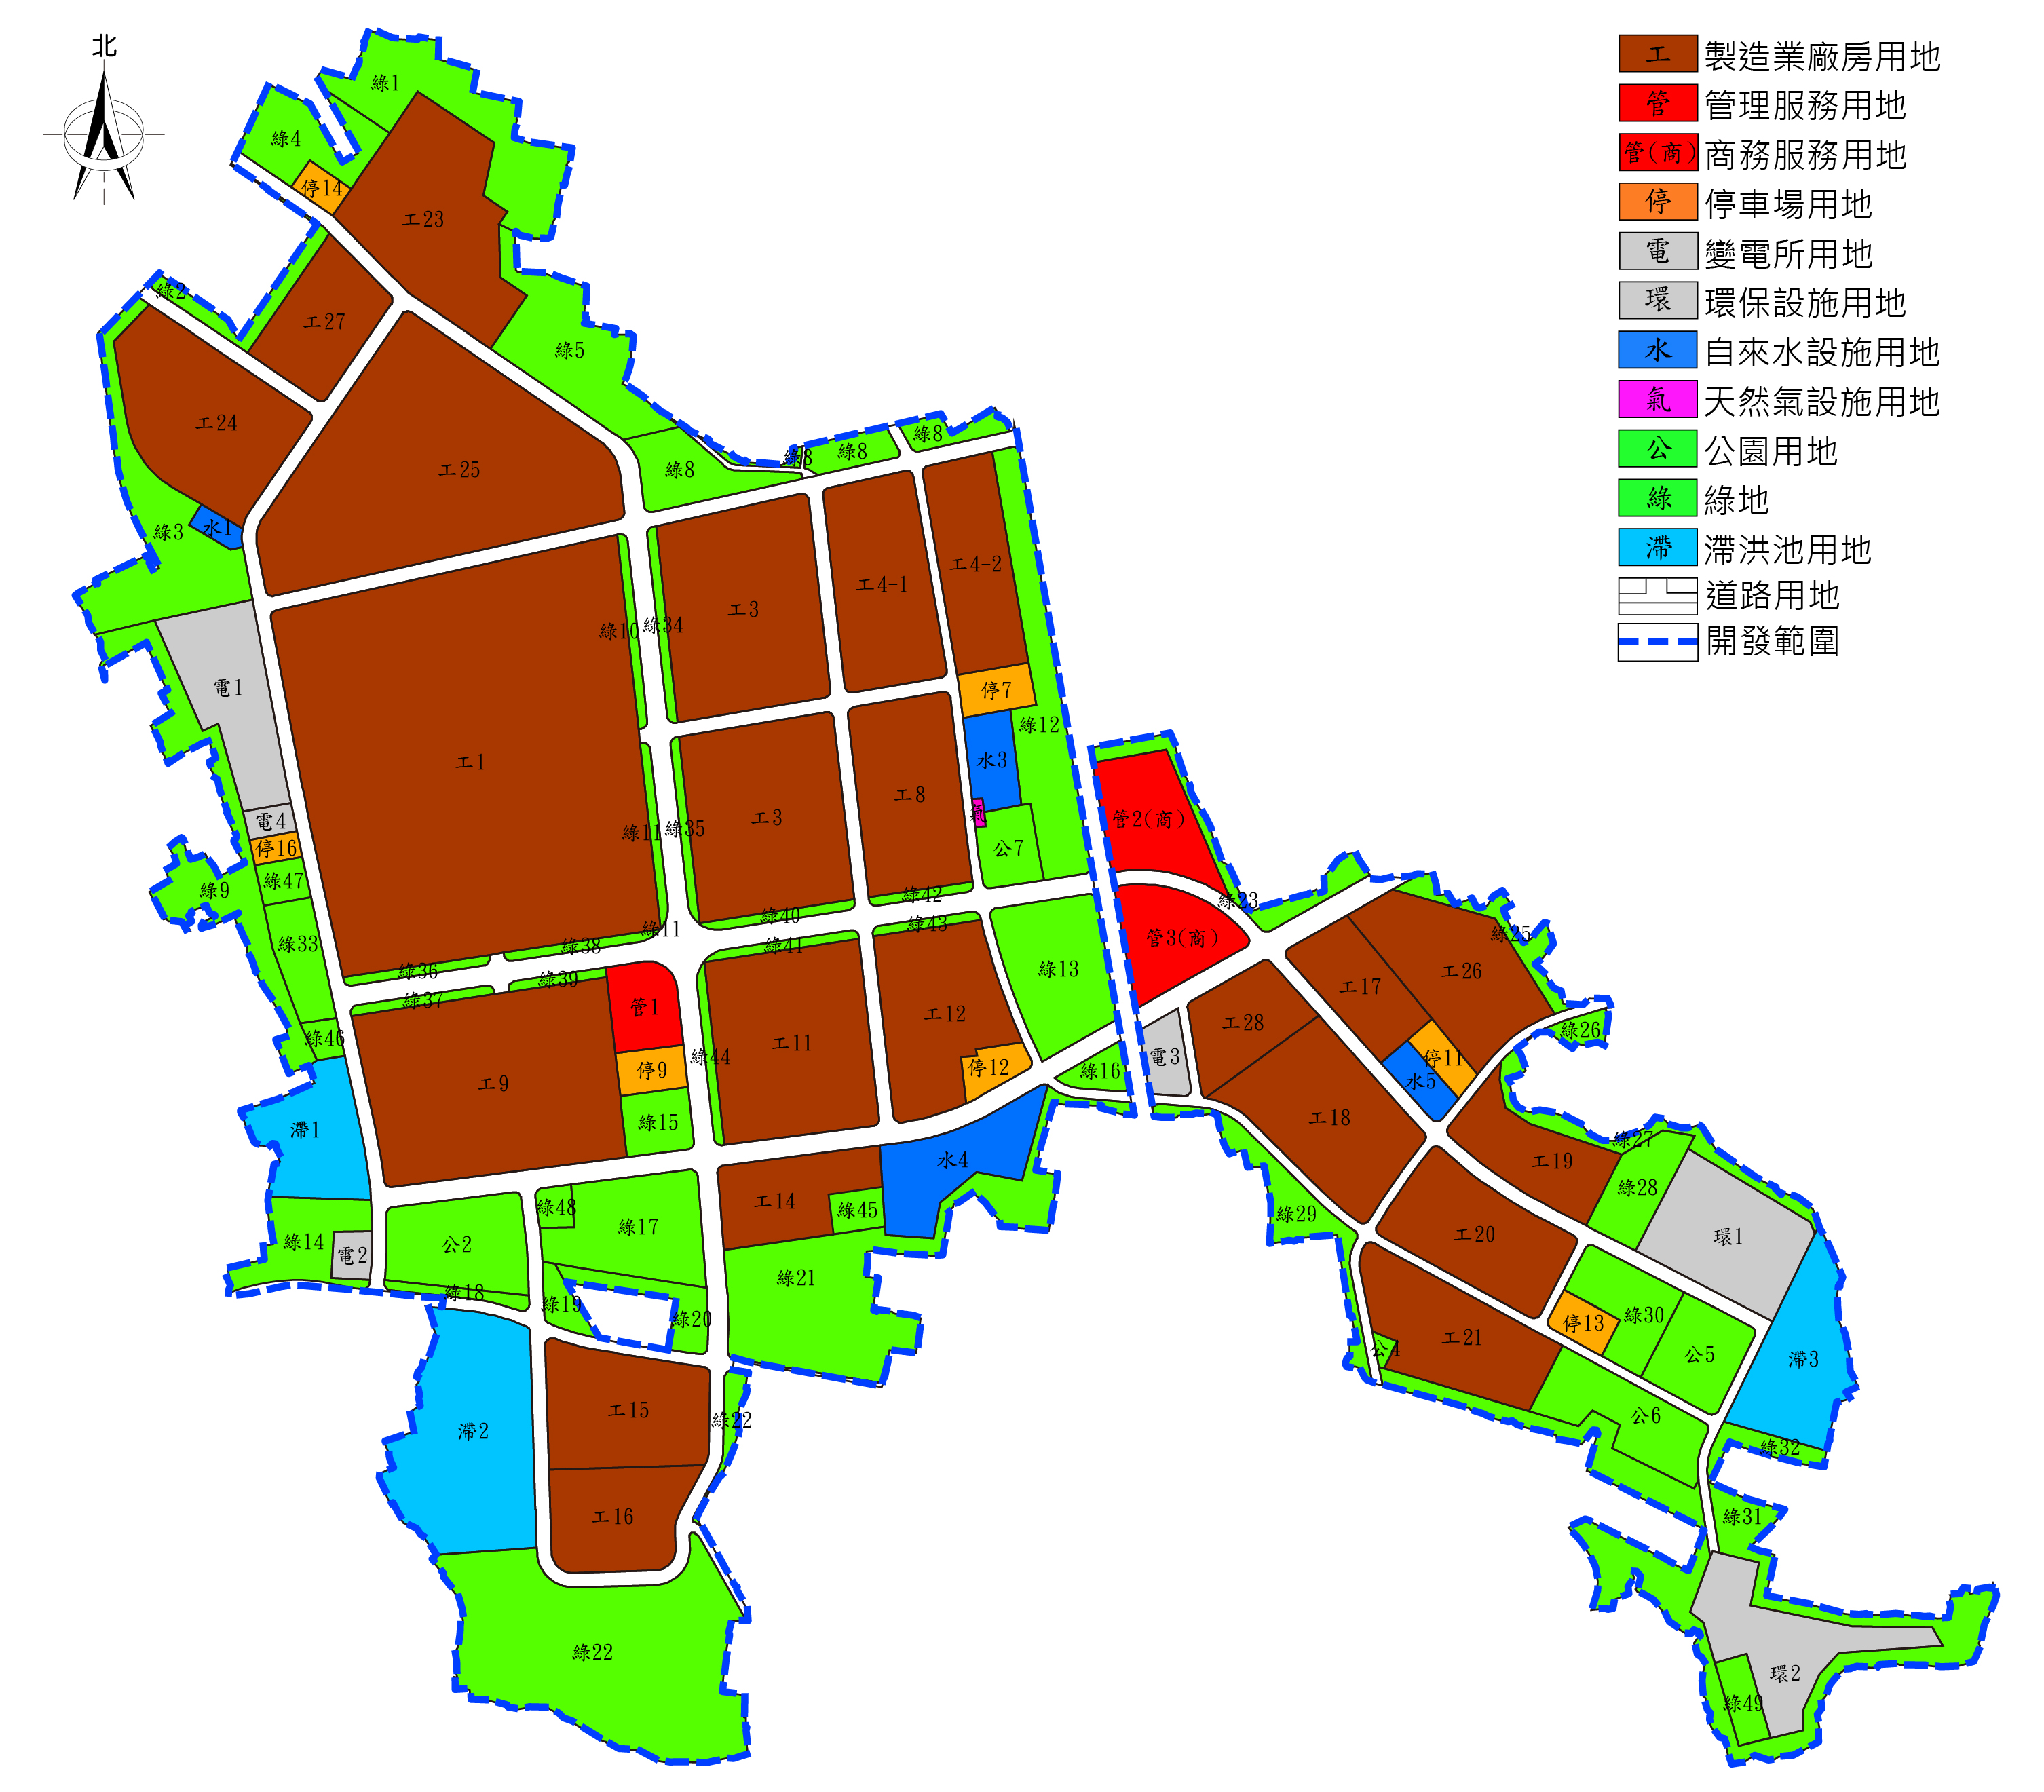 高雄園區細部計畫示意圖，用以表示高雄園區土地都市計畫之土地使用分區規劃情形。另開視窗下載高雄園區土地使用計畫示意圖pdf檔